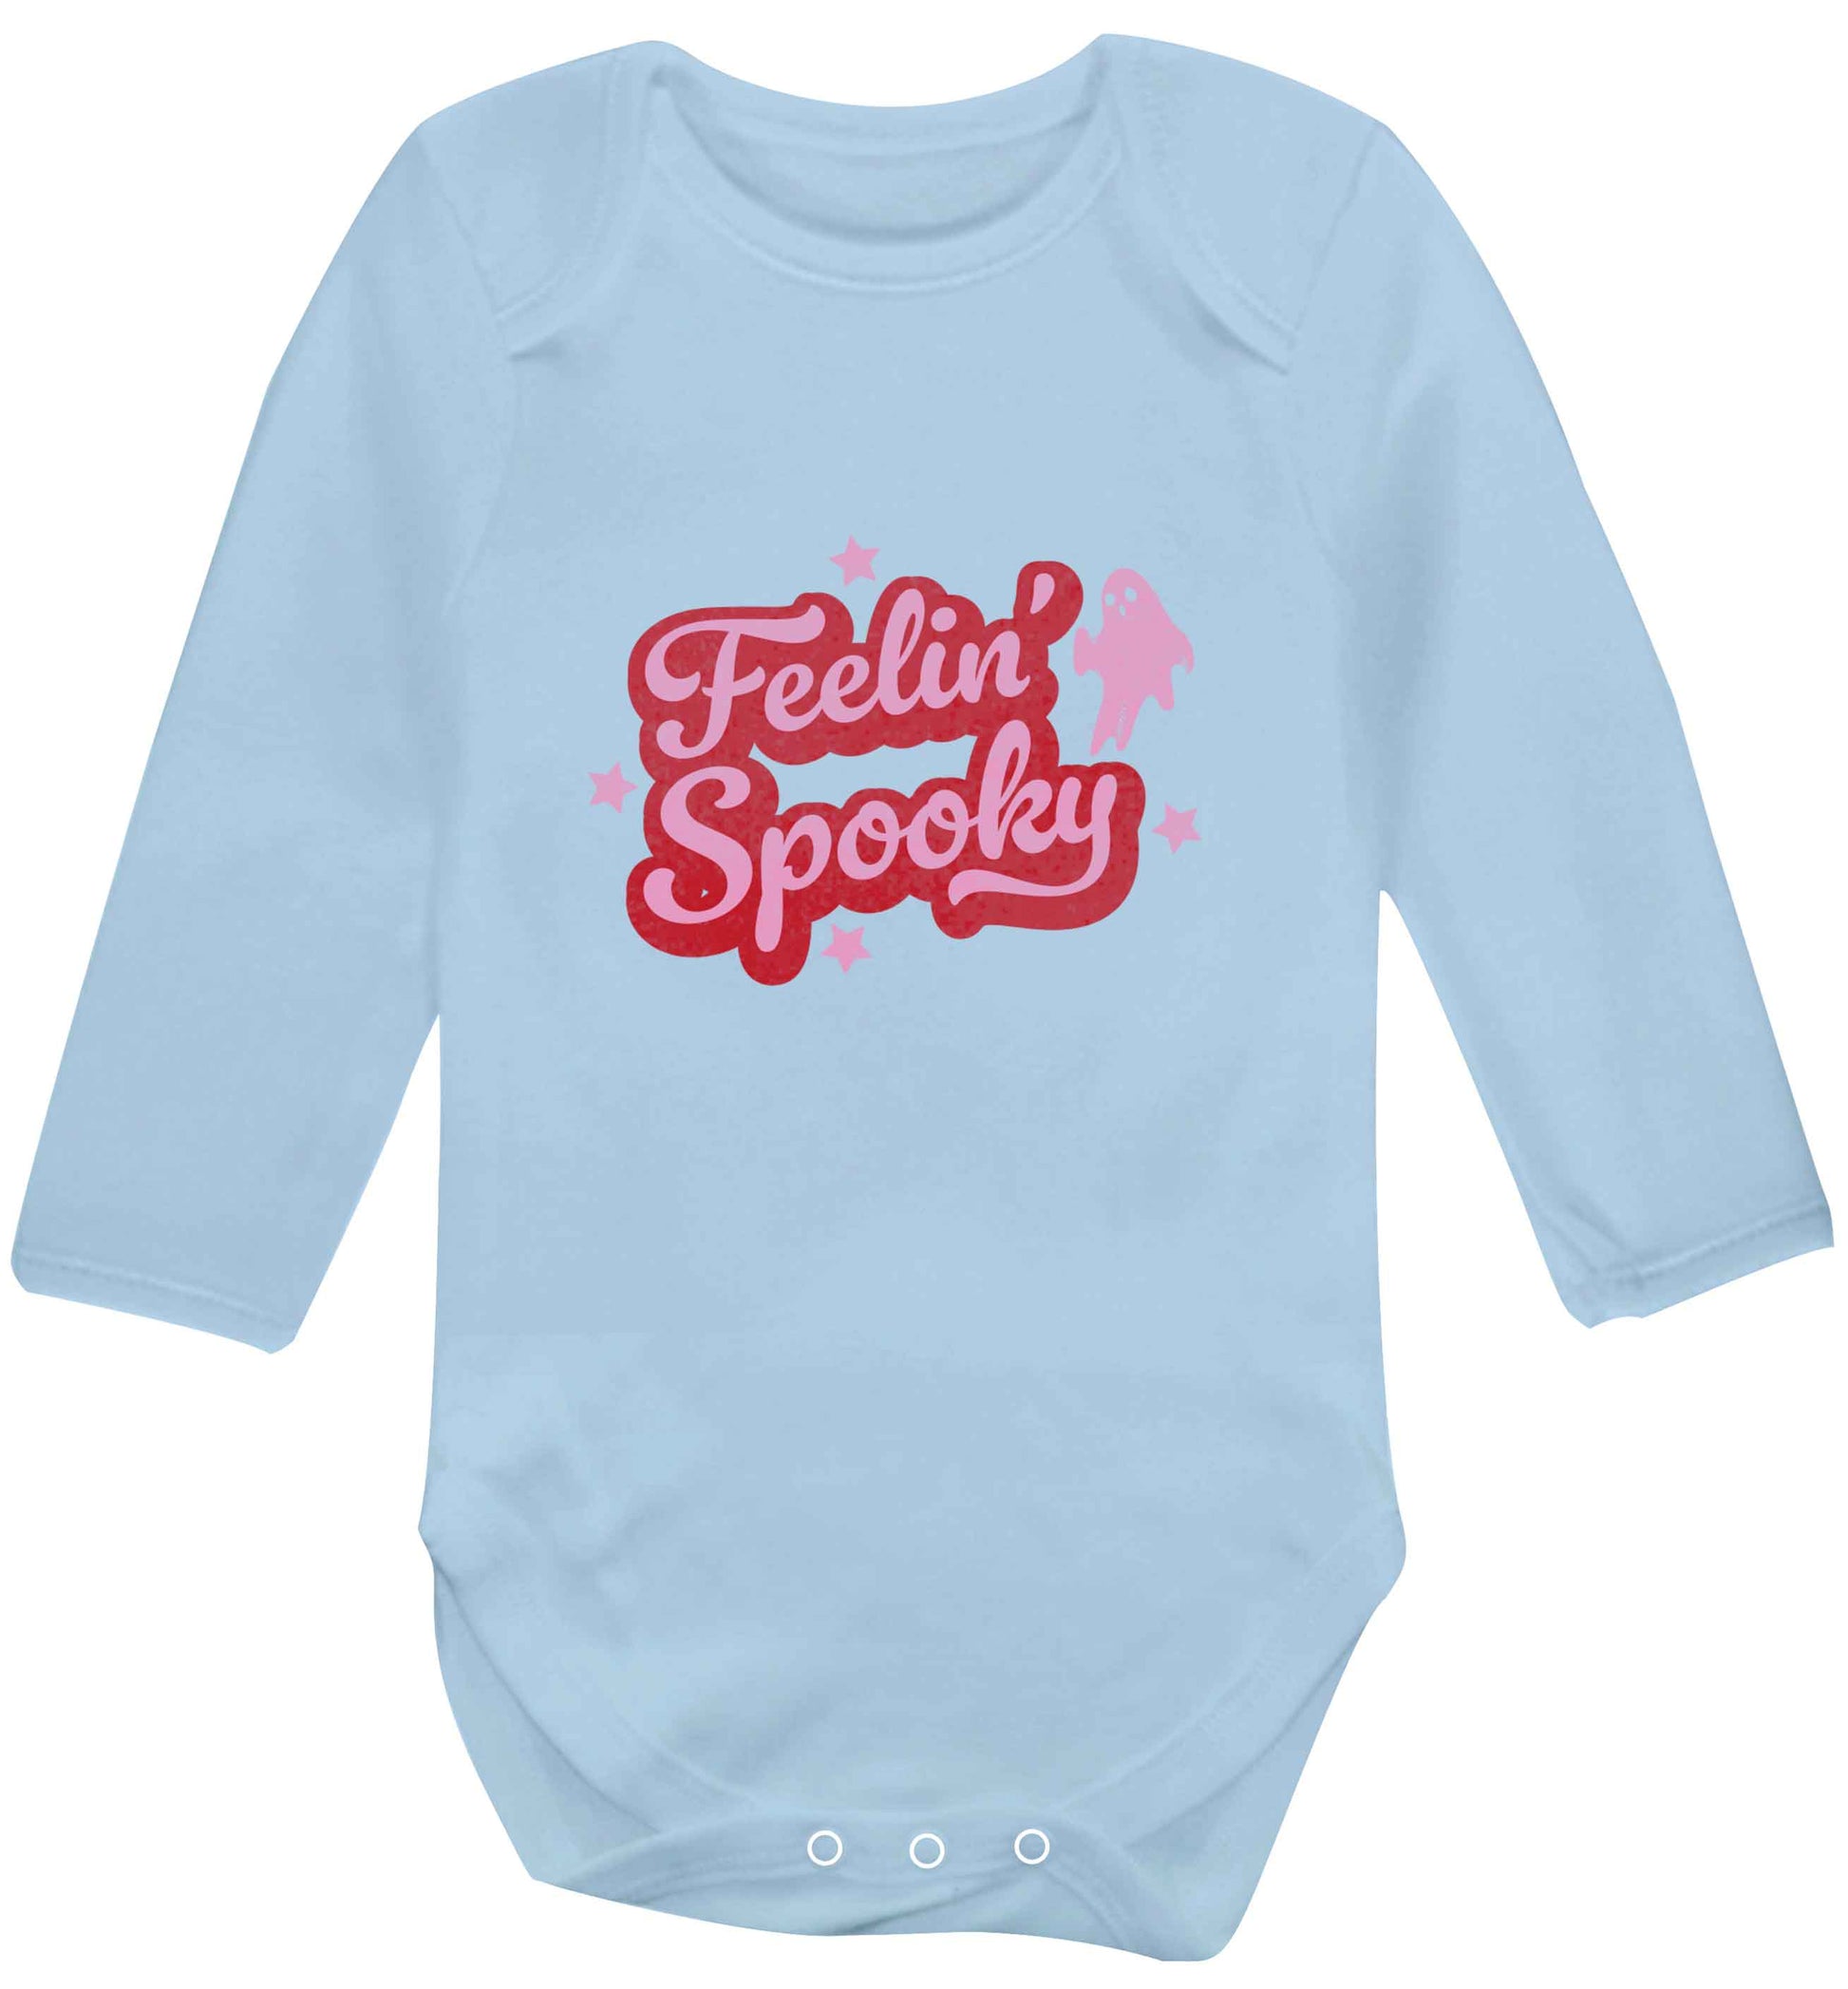 Feelin' Spooky Kit baby vest long sleeved pale blue 6-12 months